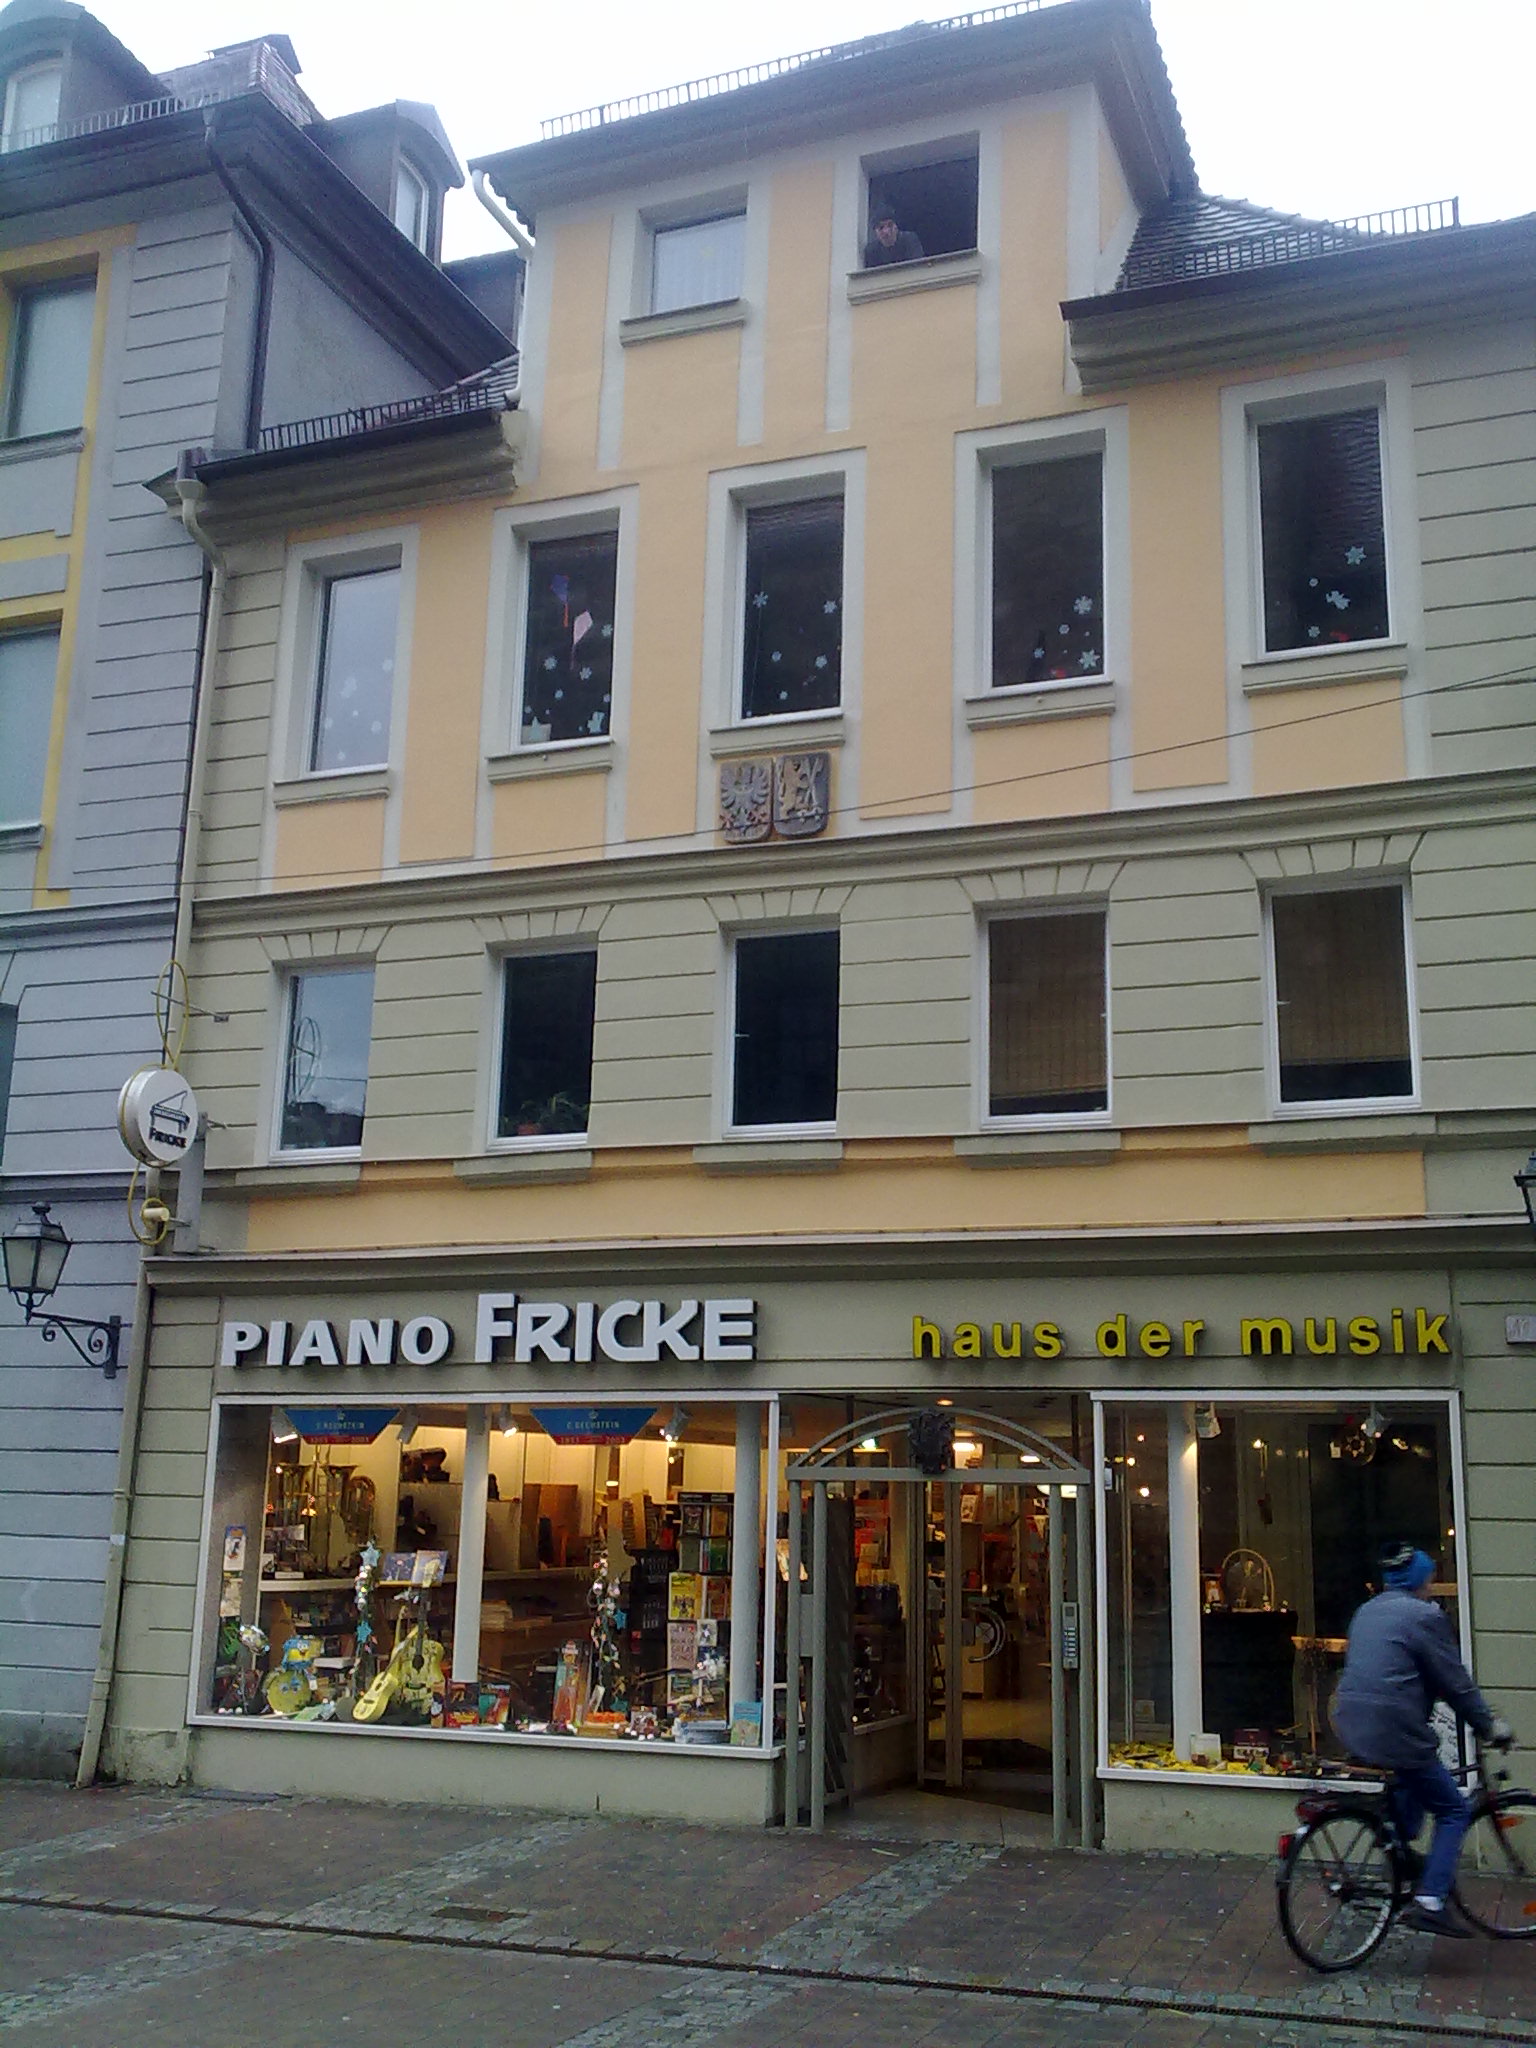 Piano Fricke - Haus der Musik